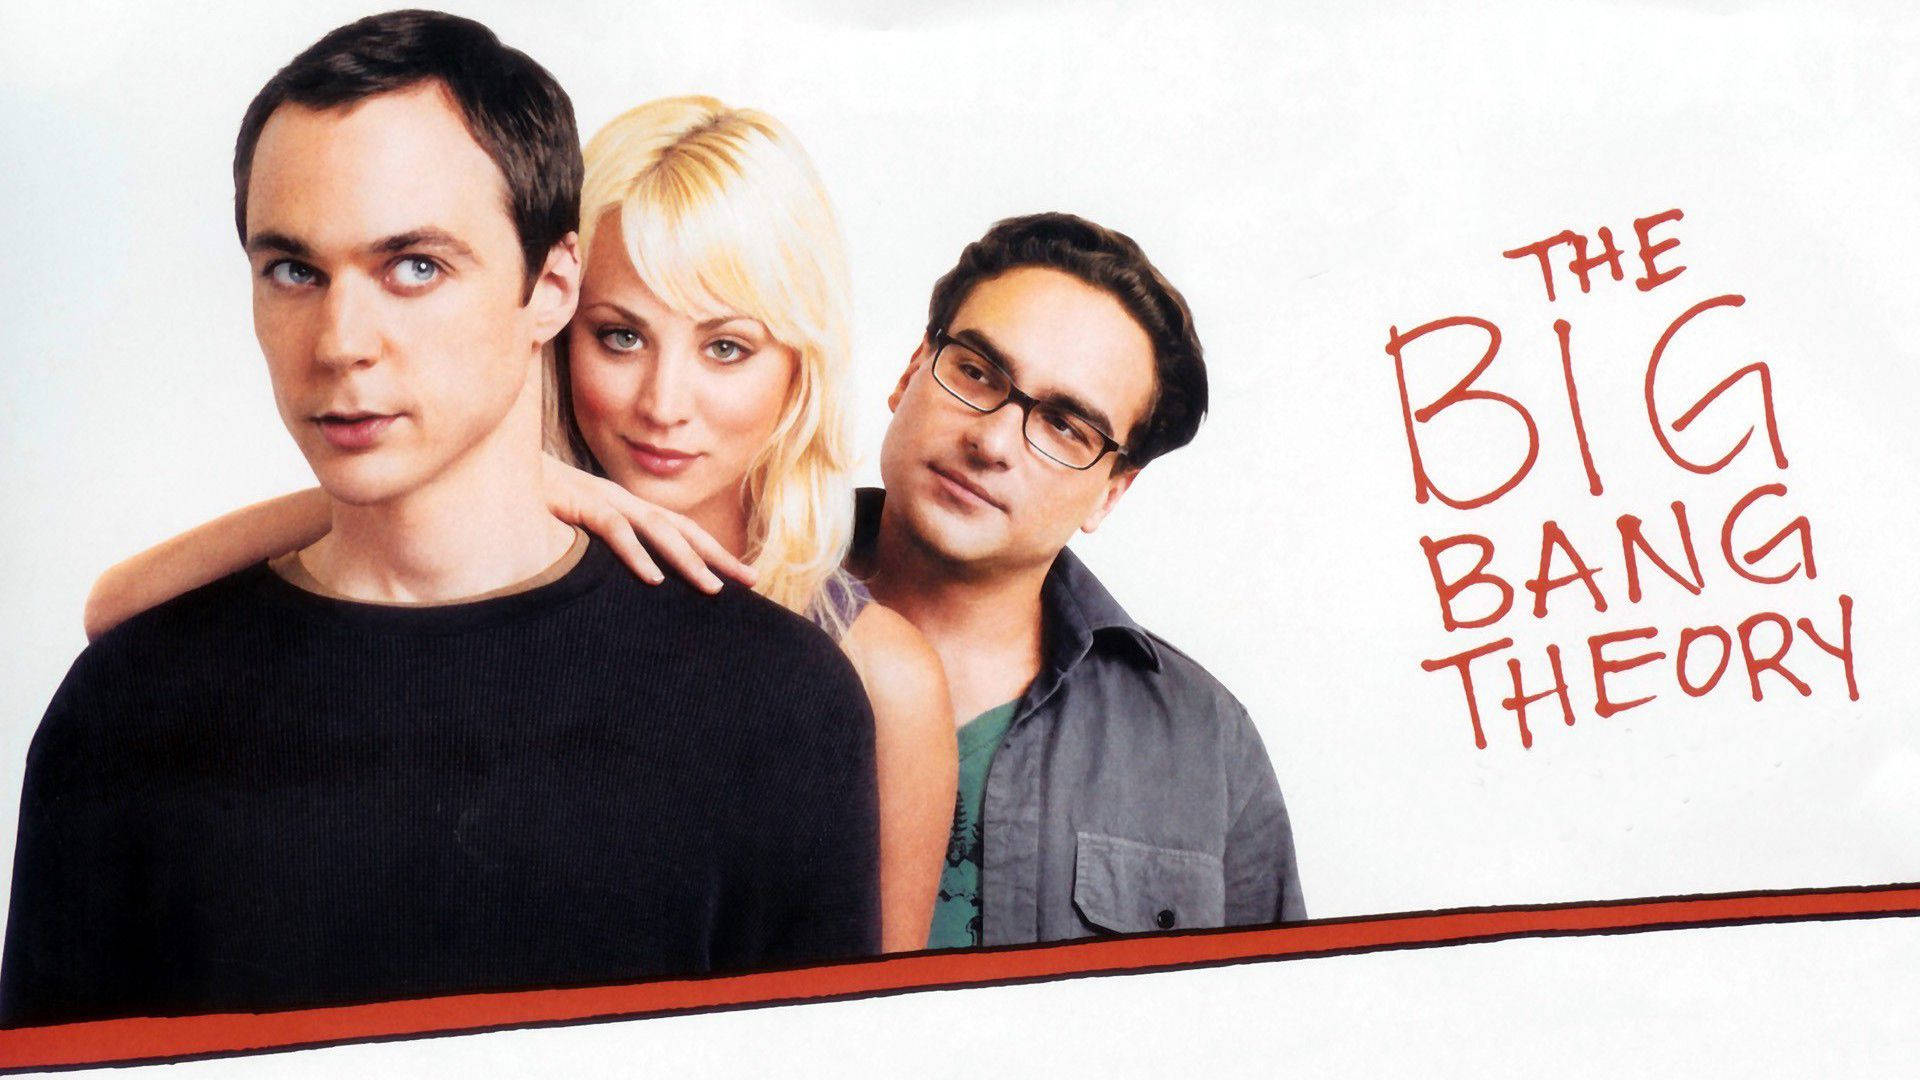 Download The Big Bang Theory Star Poster Wallpaper 